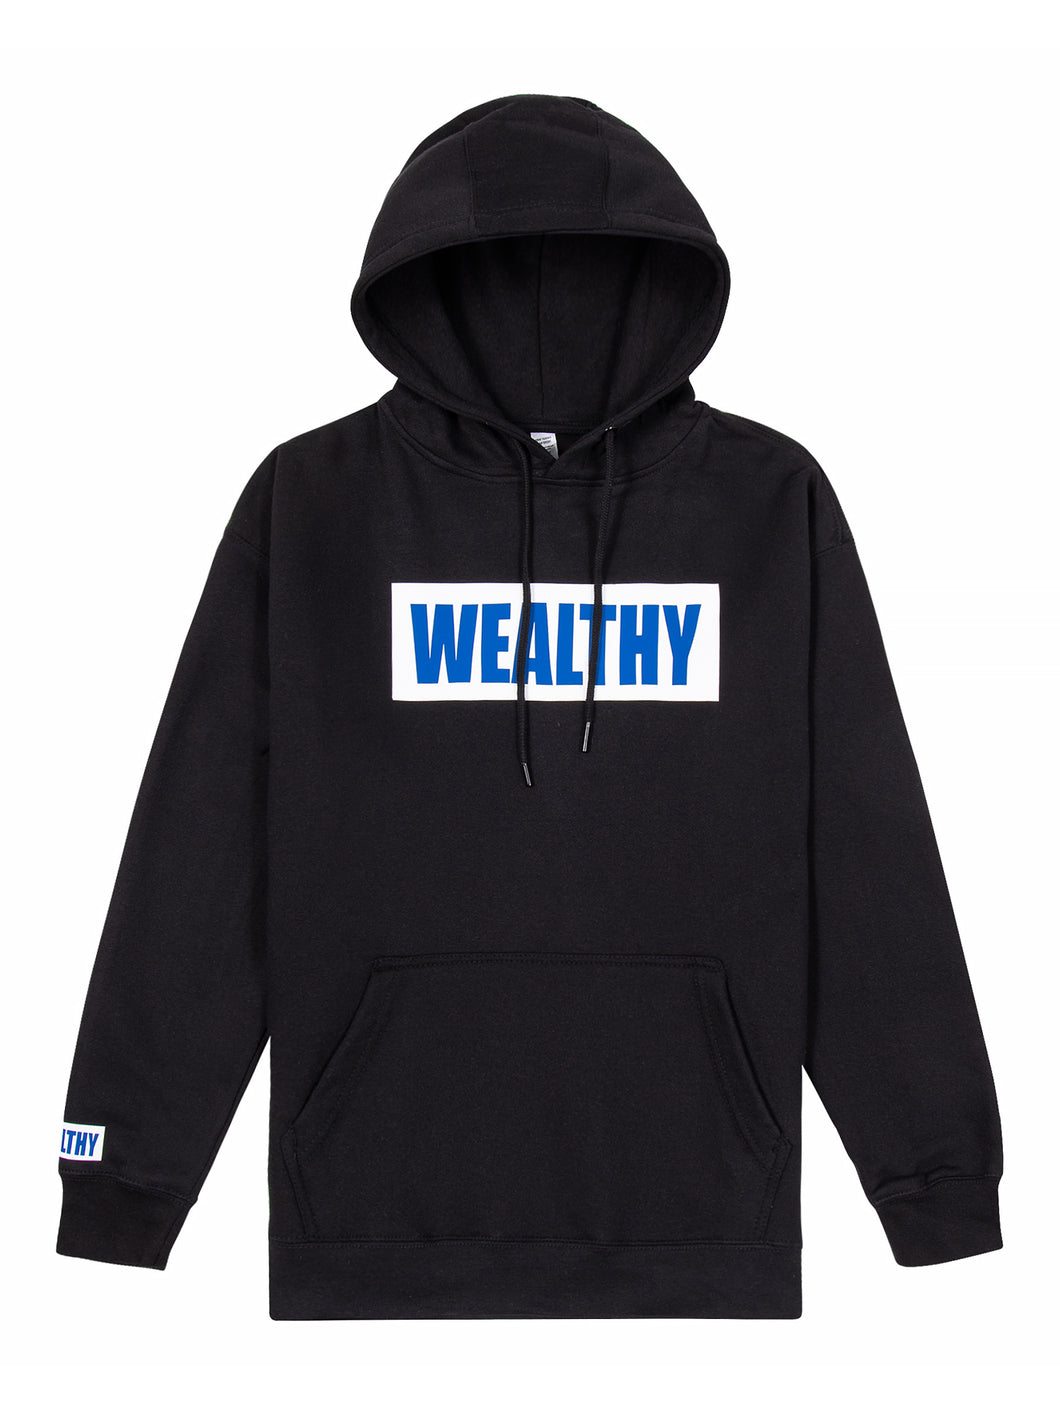 Wealthy Hoodie (Black/White/Blue)